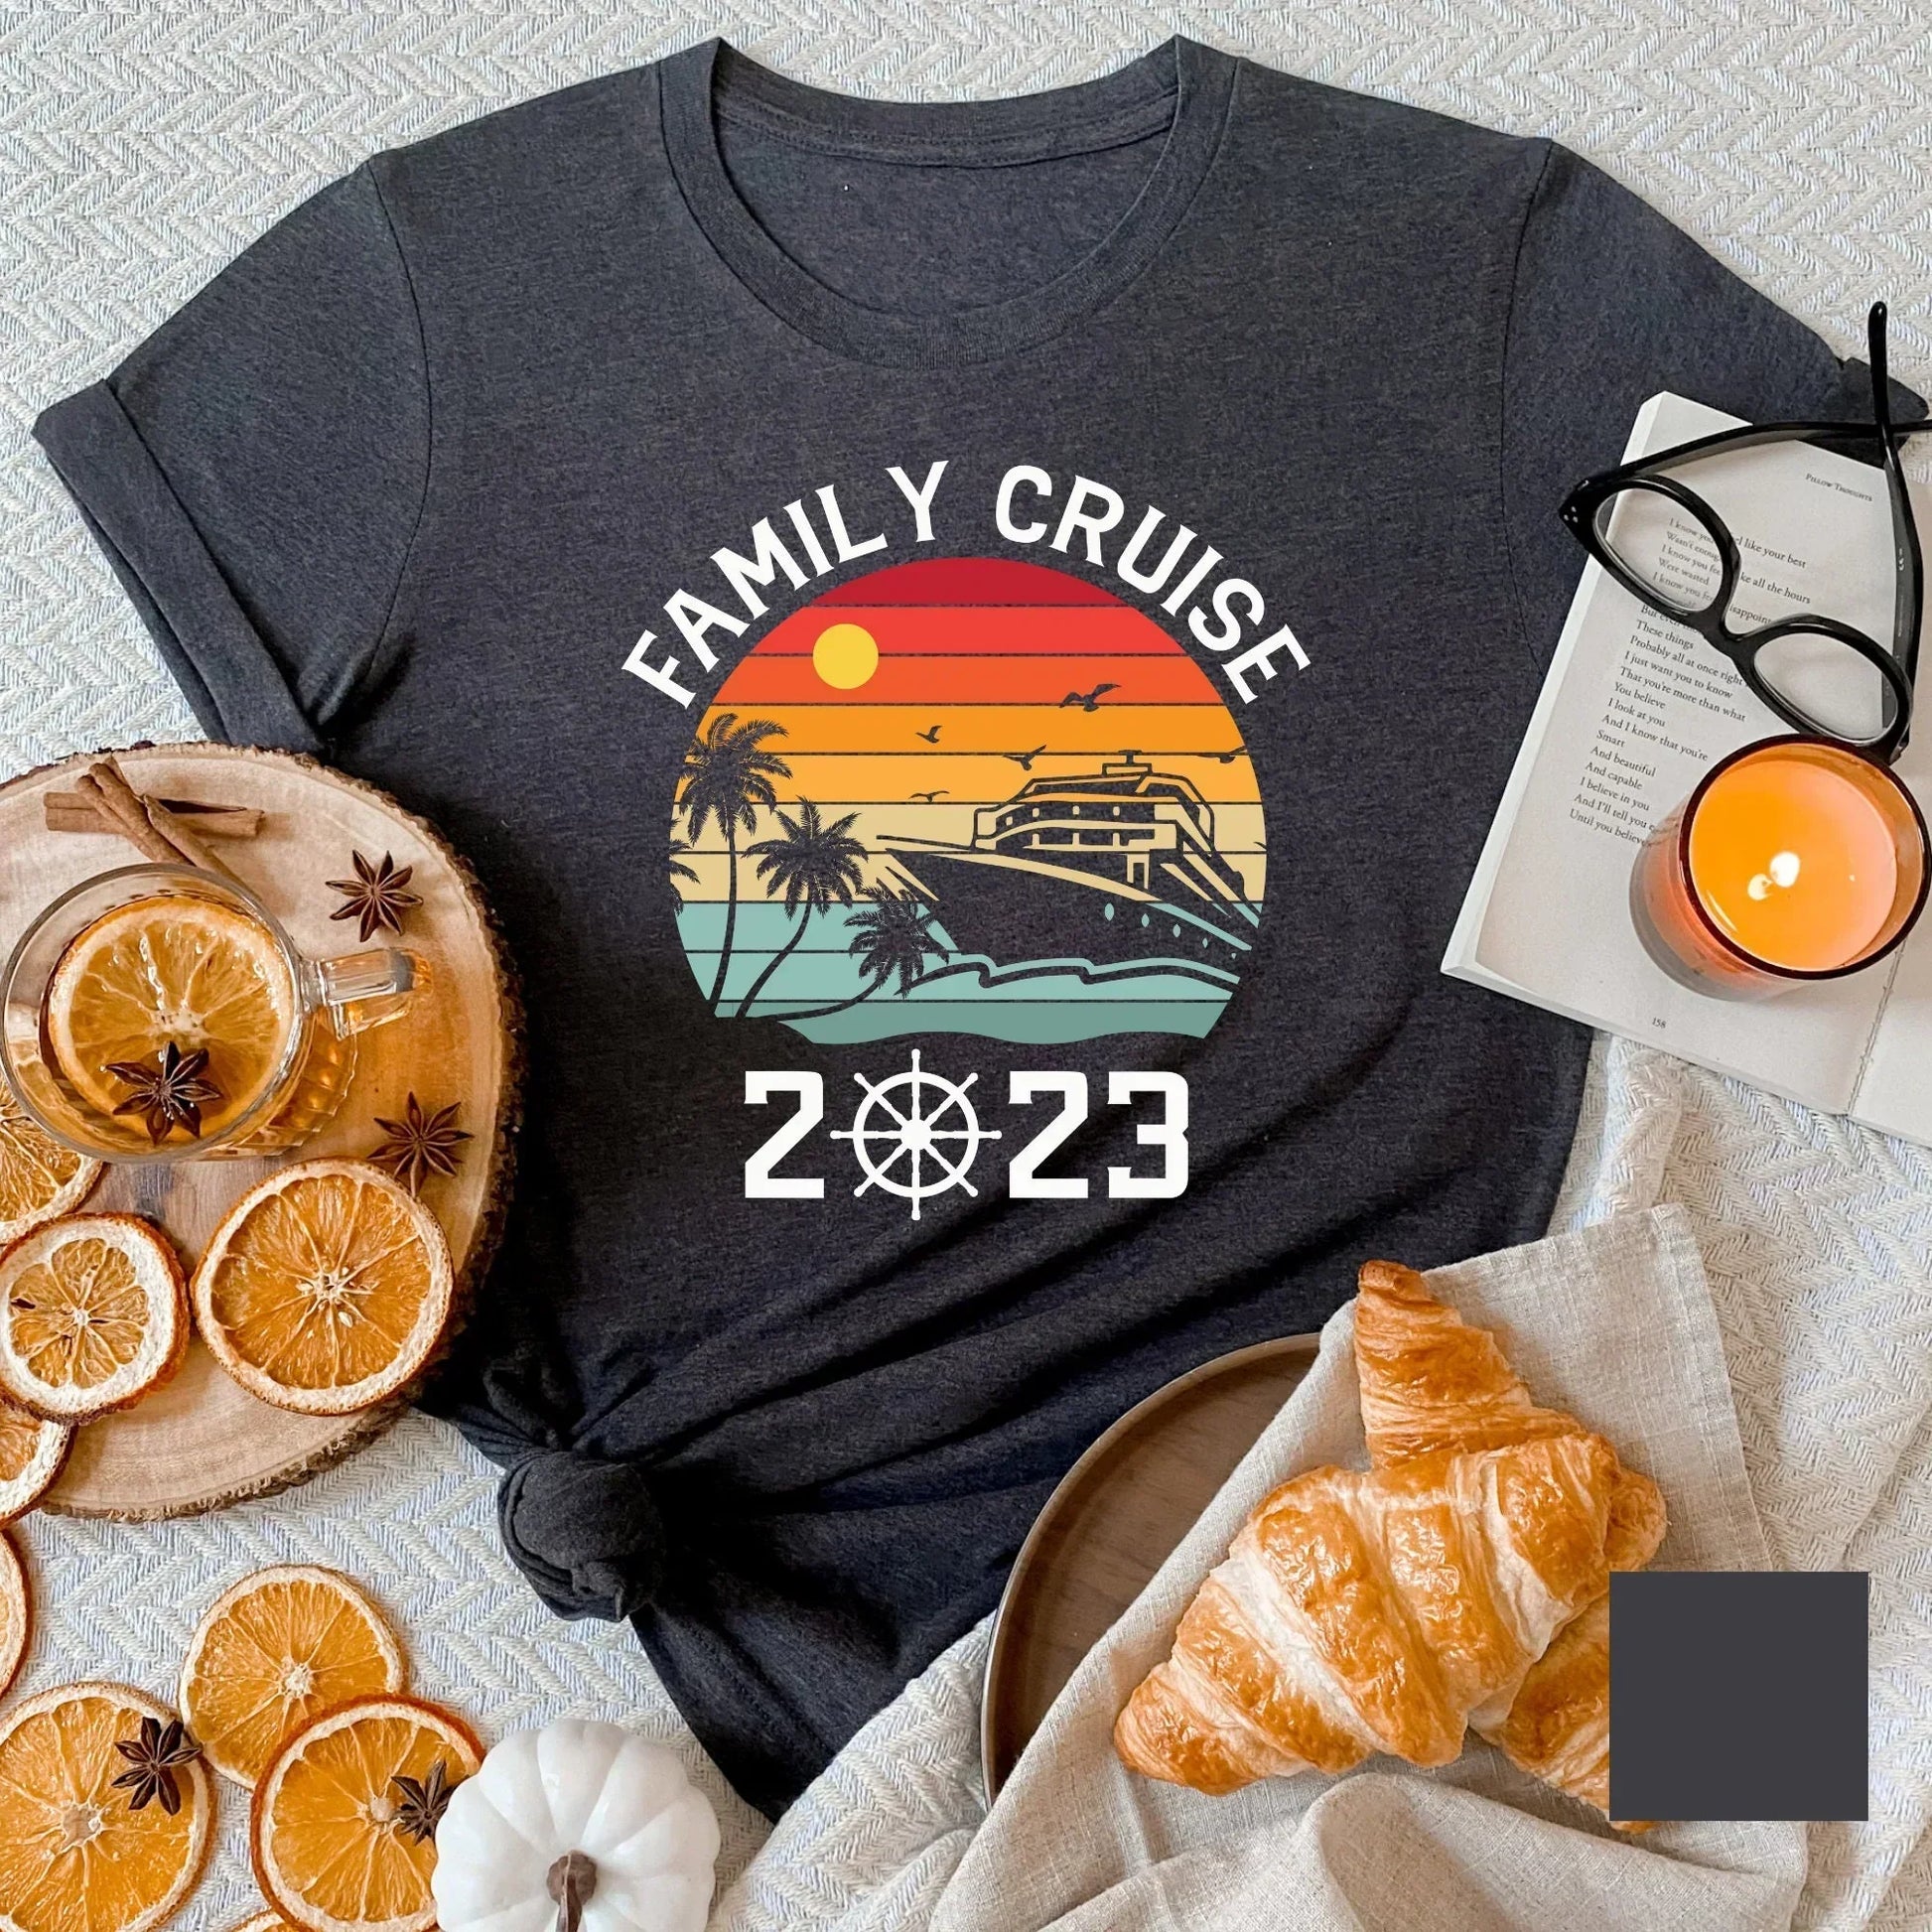 2023 Family Cruise Shirts